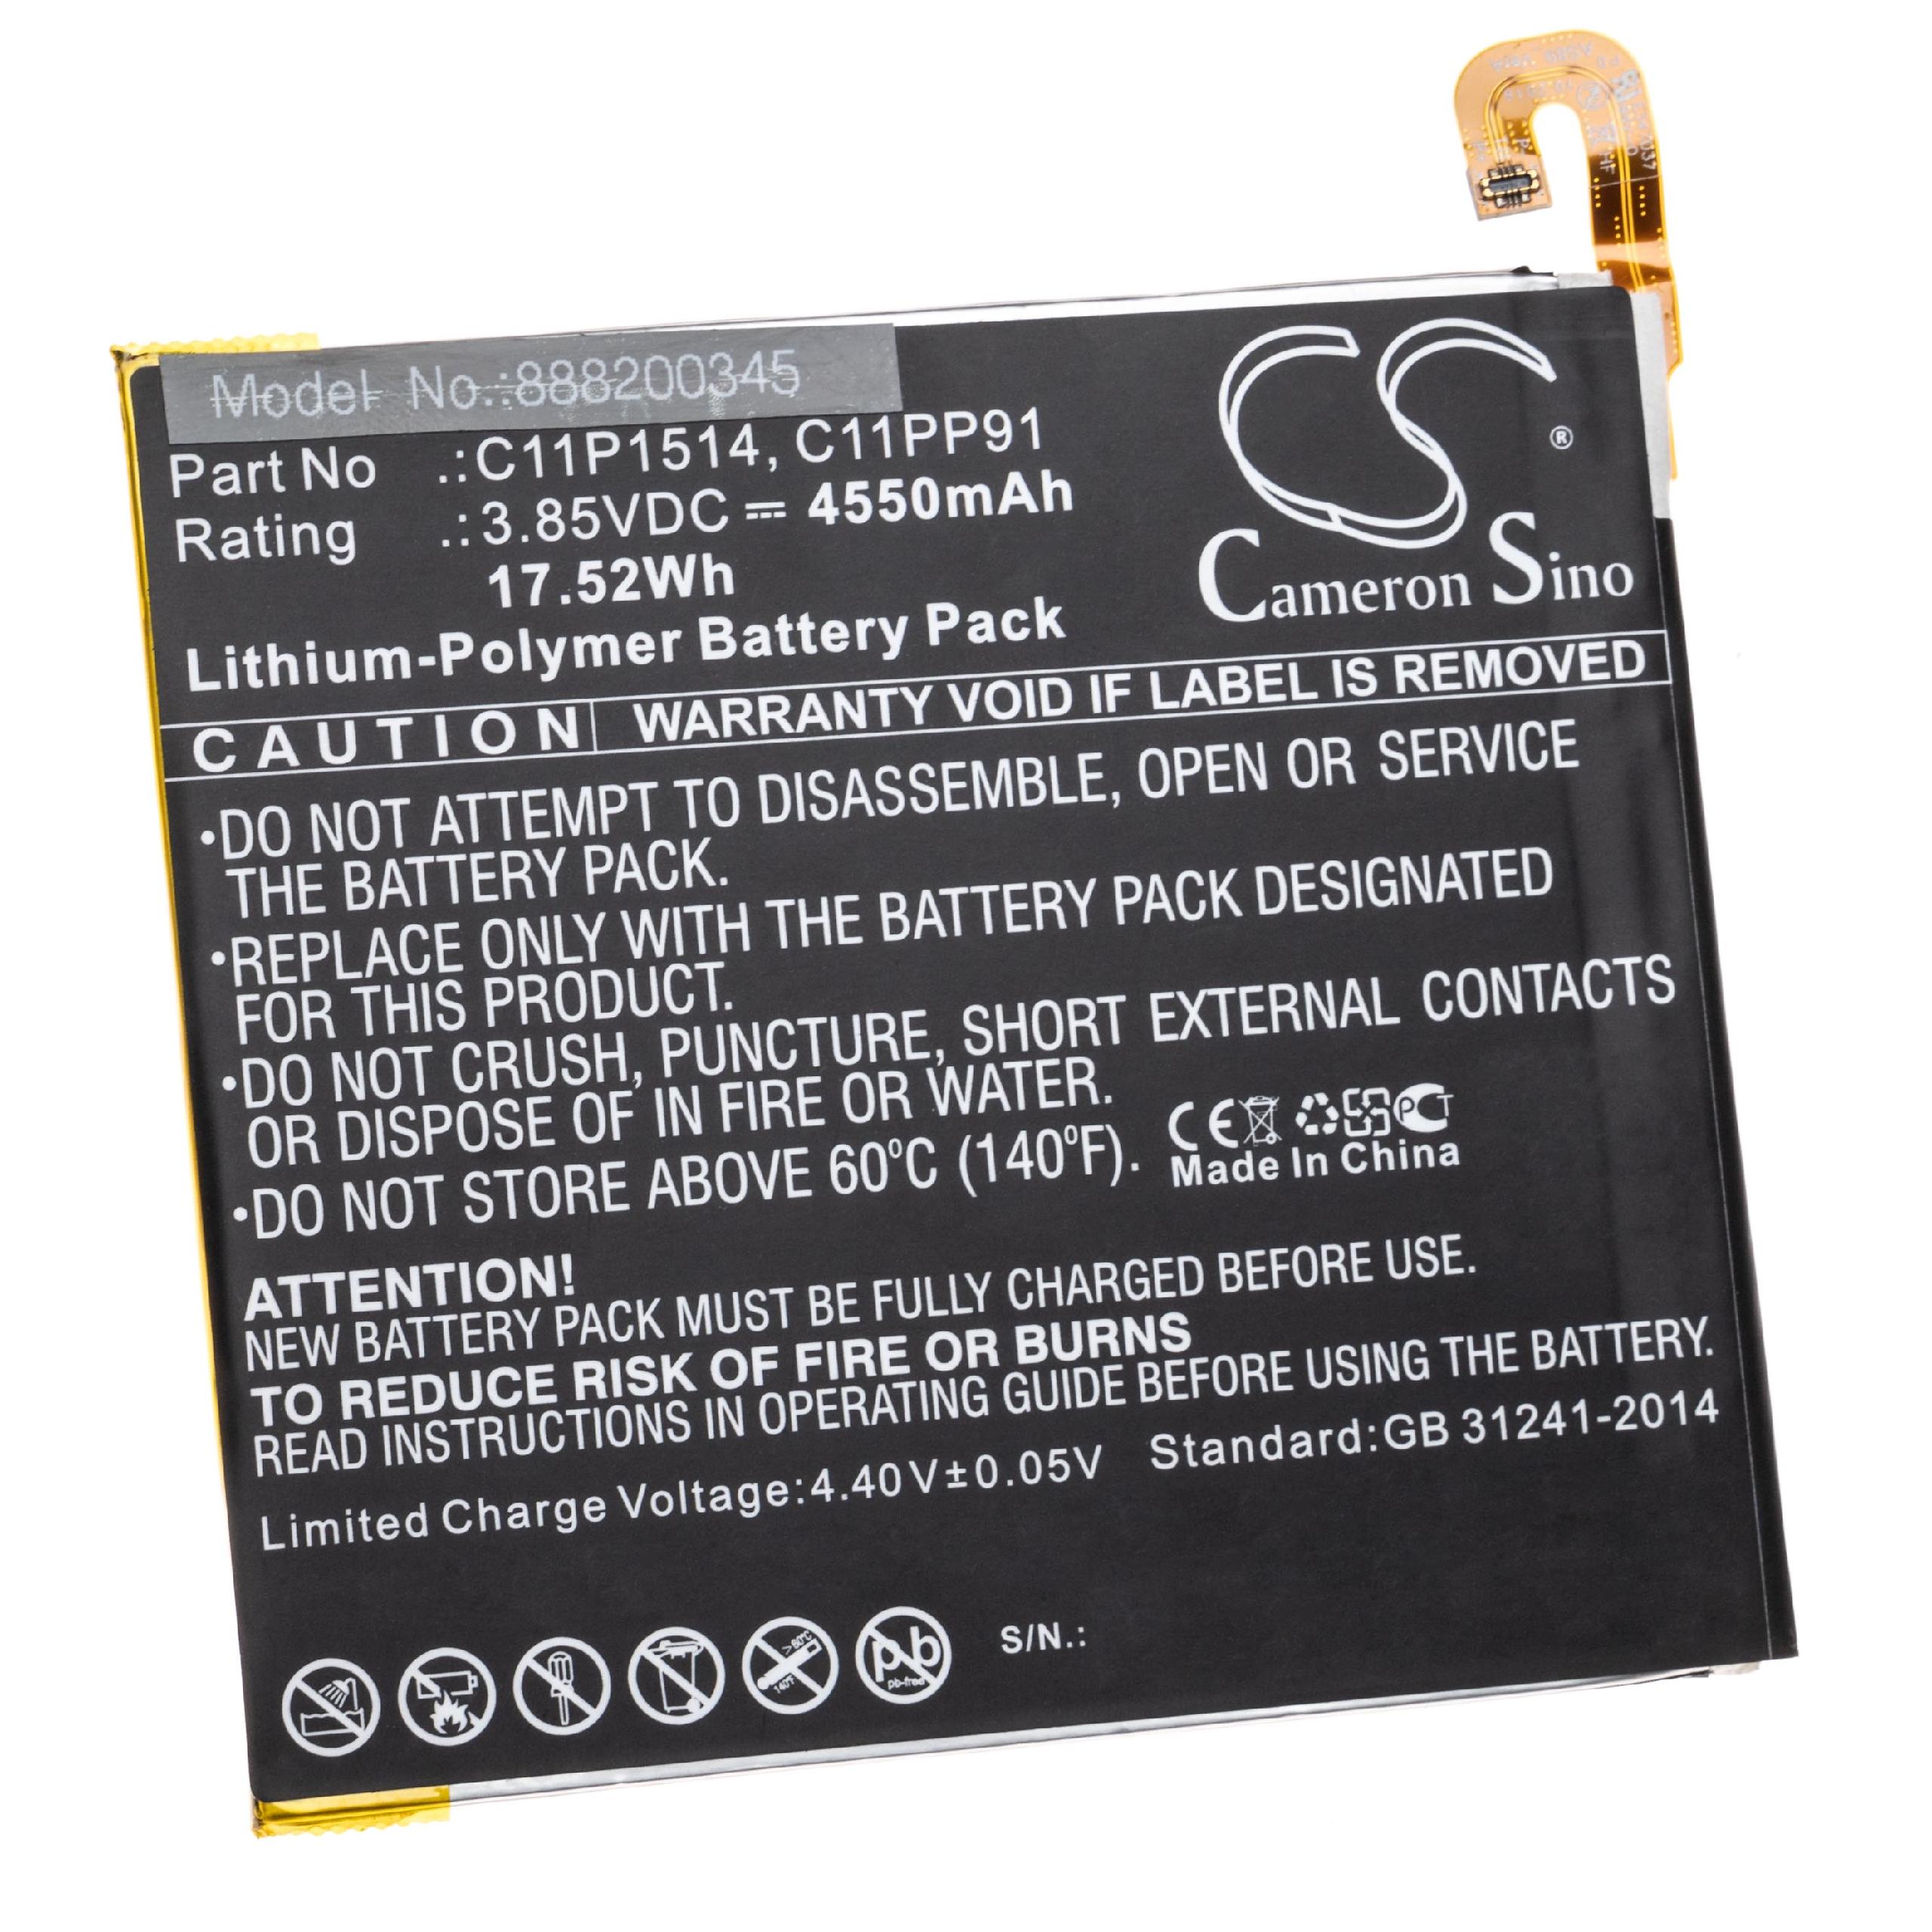 Batterie remplace Asus C11P1514, 0B200-01970000, M619, C11PP91 pour tablette - 4550mAh 3,85V Li-polymère